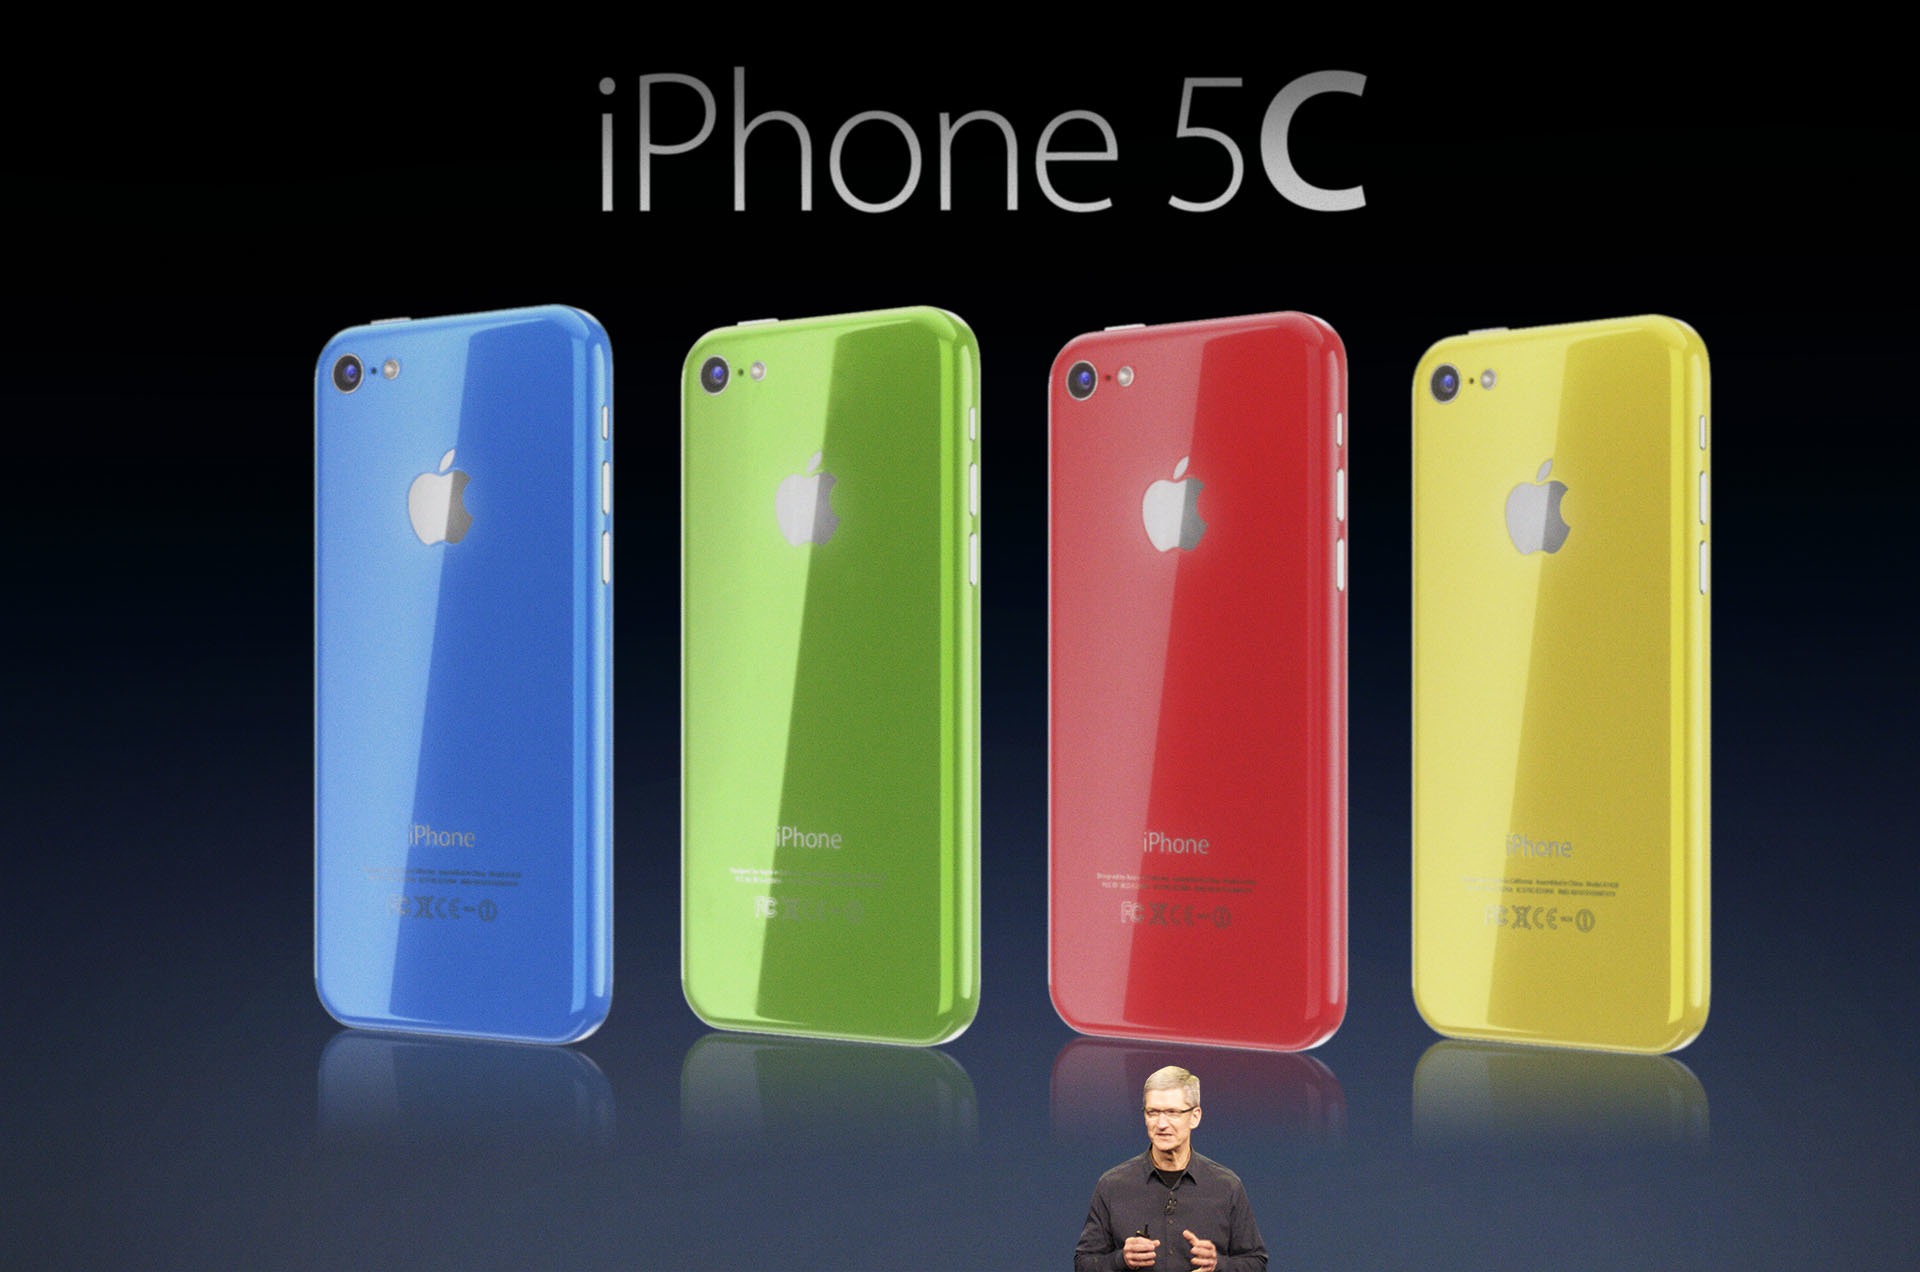 Tim-Cook-iPhone-5C-Apple